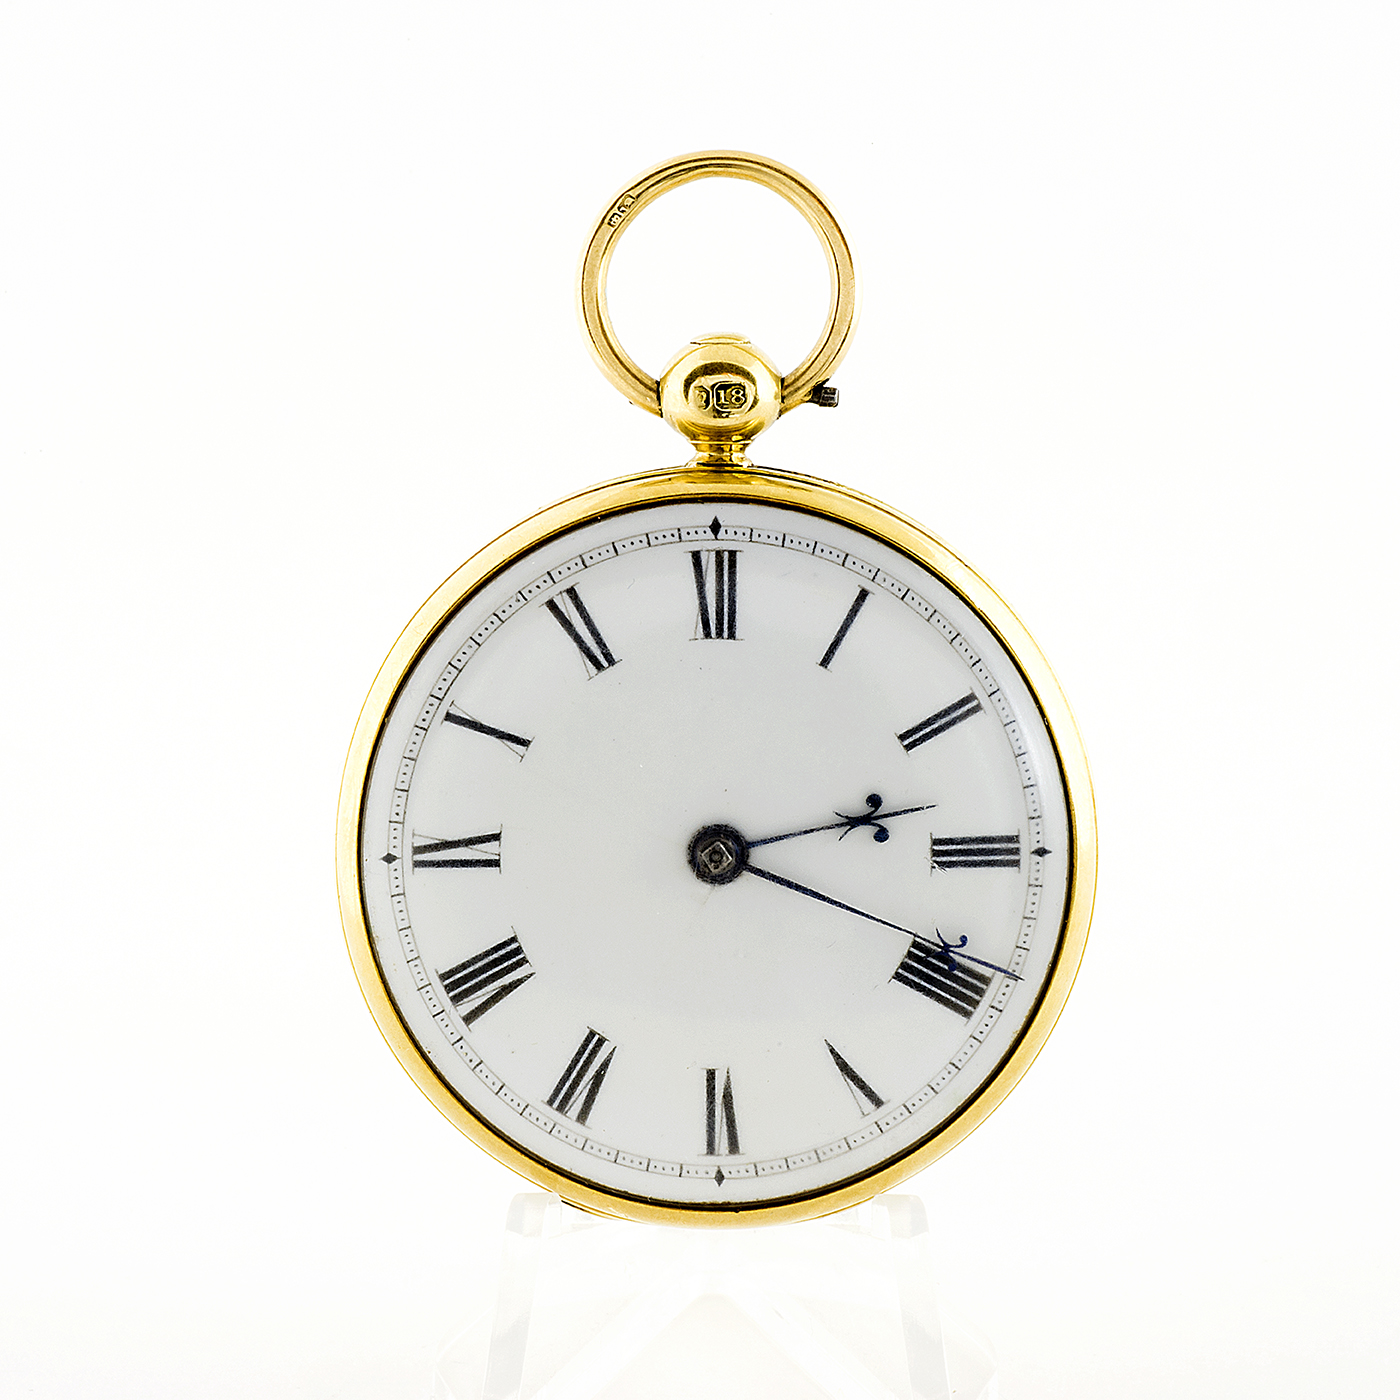 SARAH LEFEVER (London). Reloj de Bolsillo, Half Fusee (Semicatalino), Lepine. Año 1840. Oro 18k.